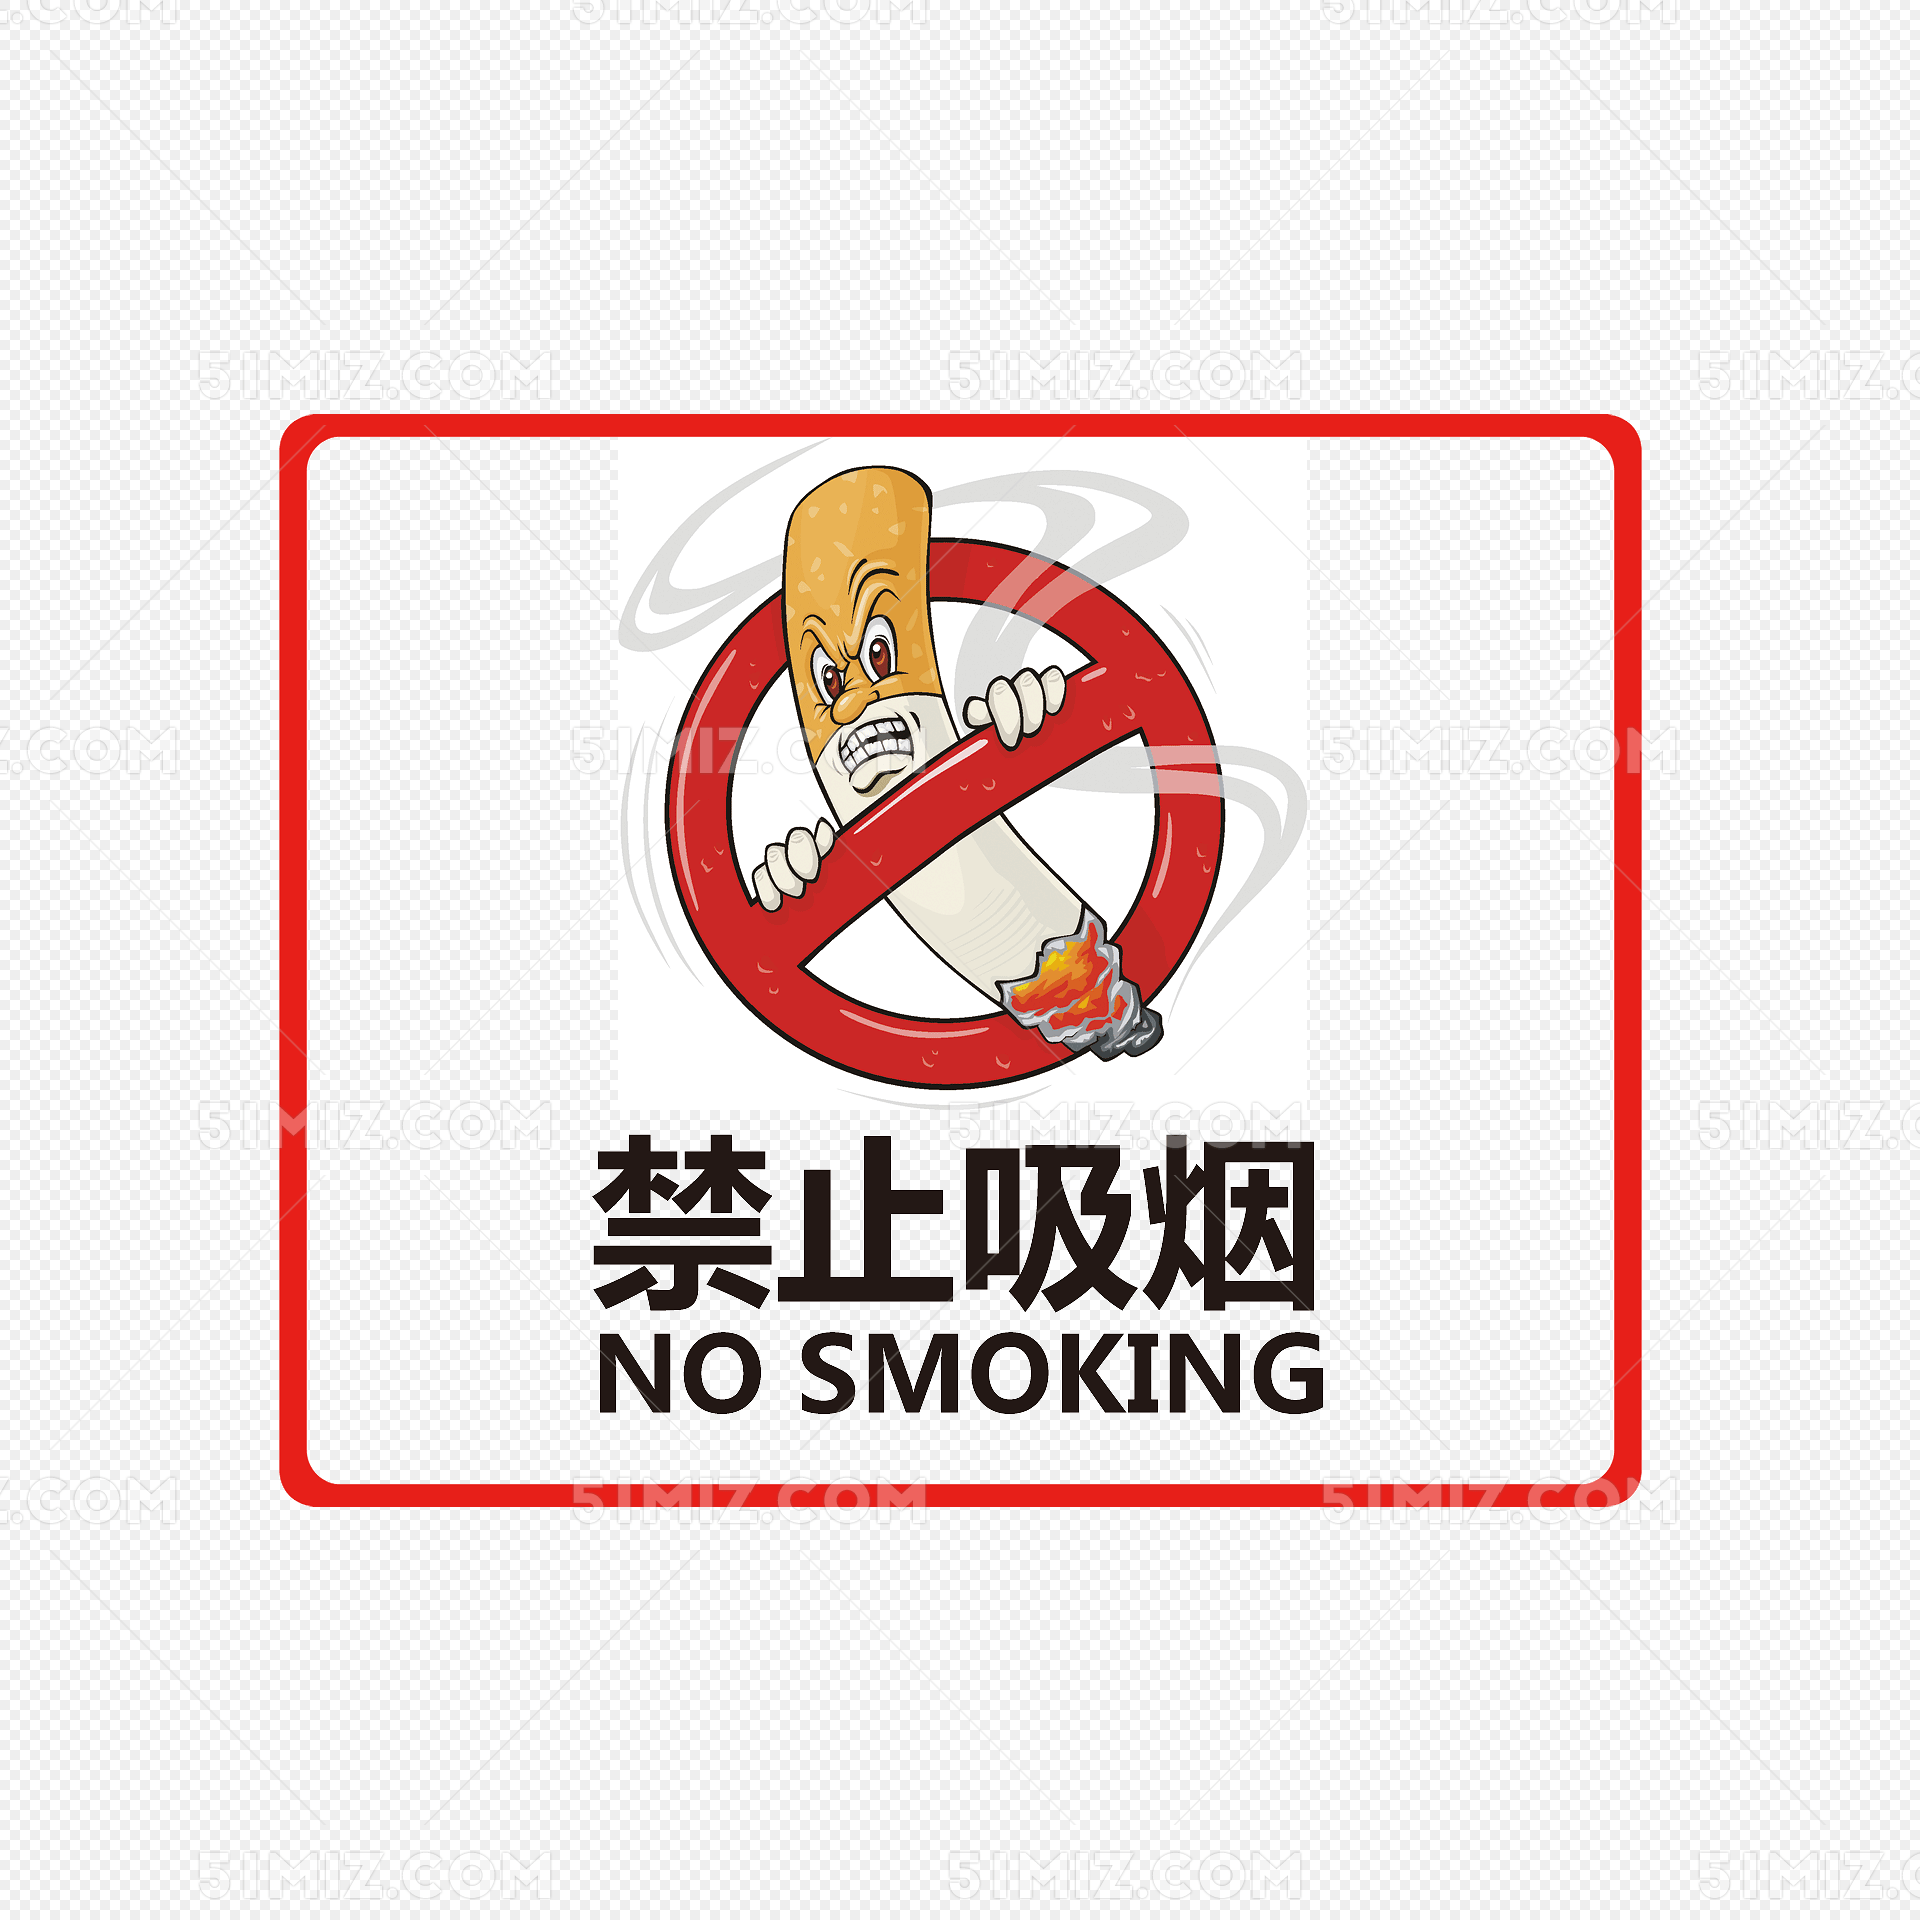 禁止吸烟标志图片psd素材